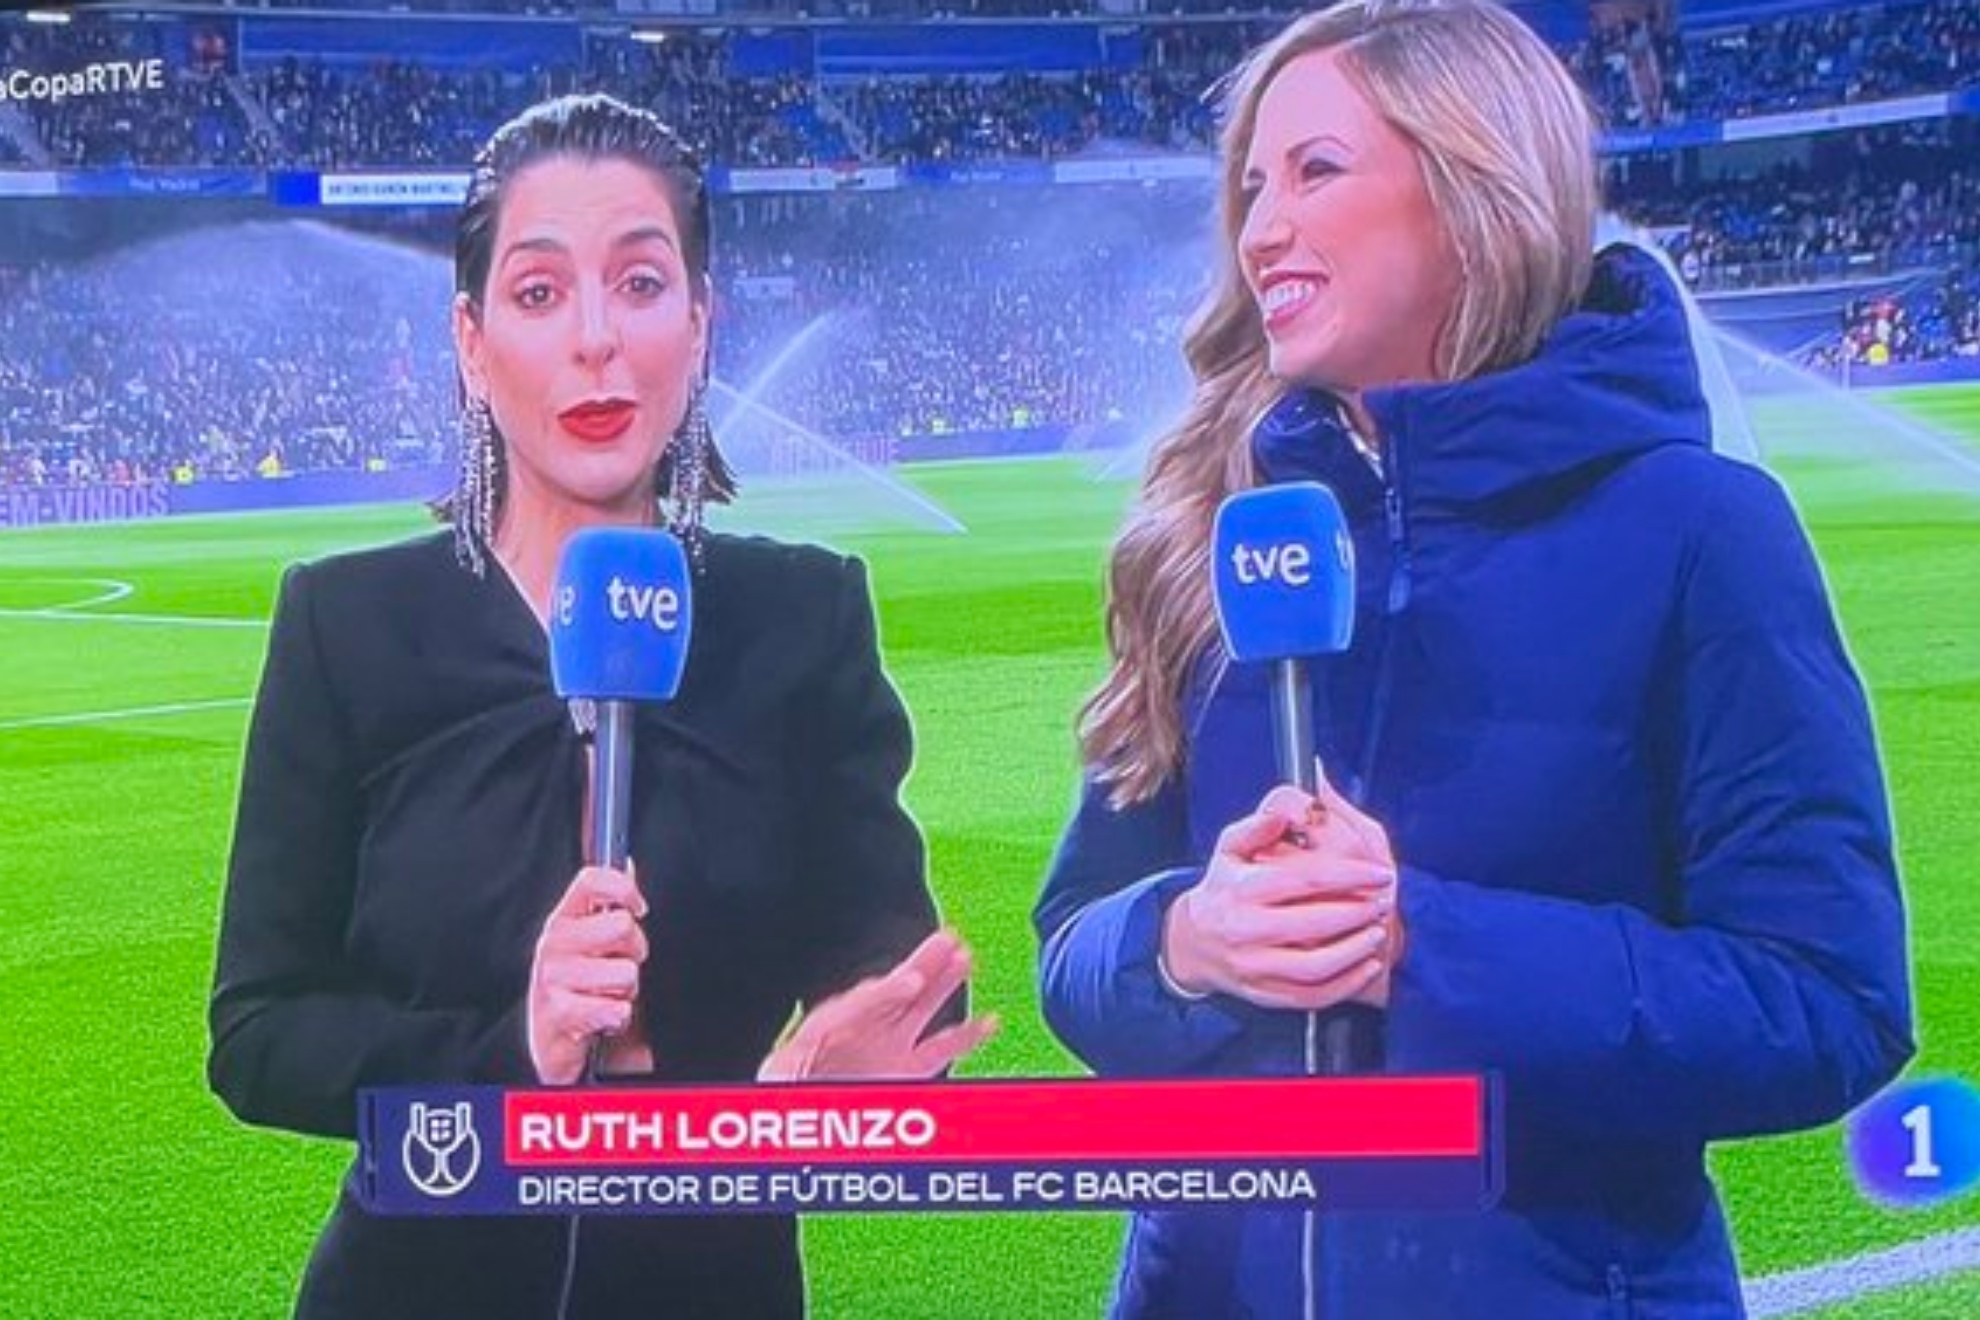 El sorpresivo rtulo que TVE le ha puesto a Ruth Lorenzo: "Director de ftbol del FC Barcelona".